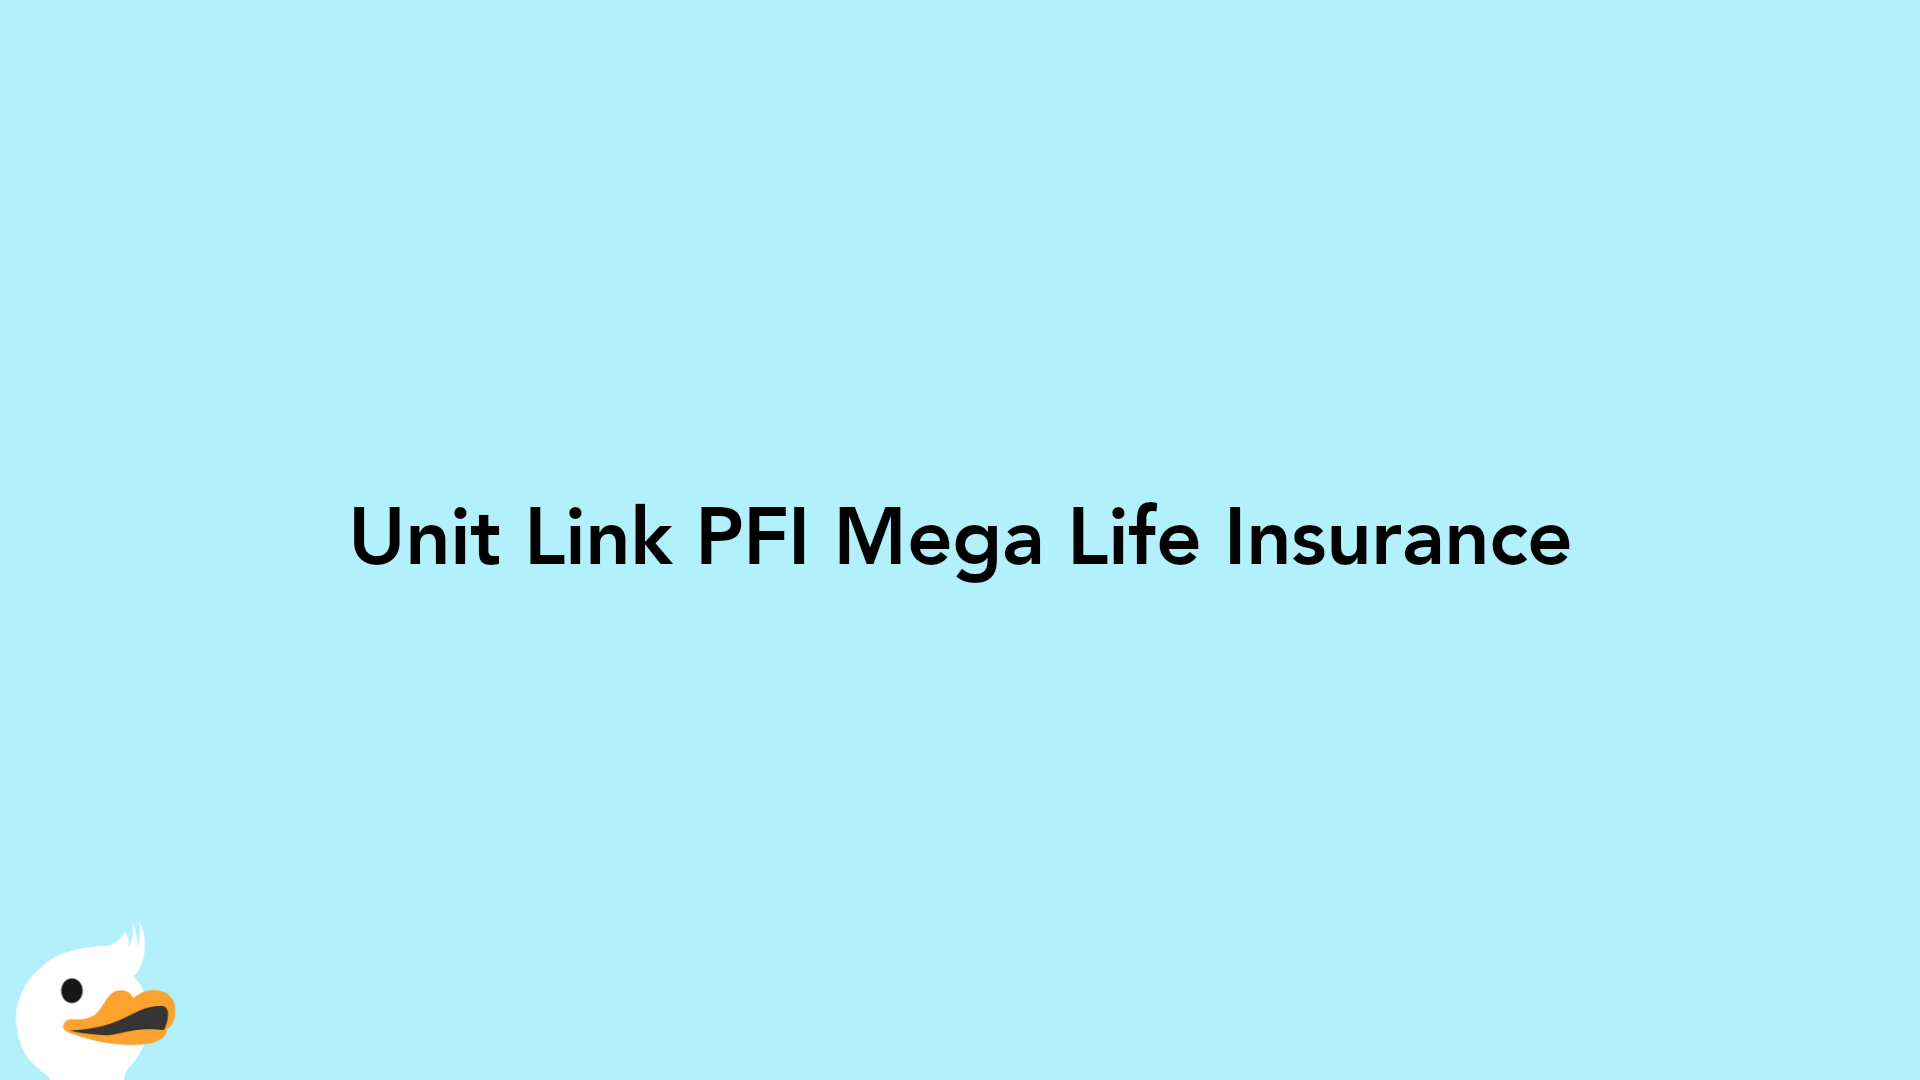 Unit Link PFI Mega Life Insurance